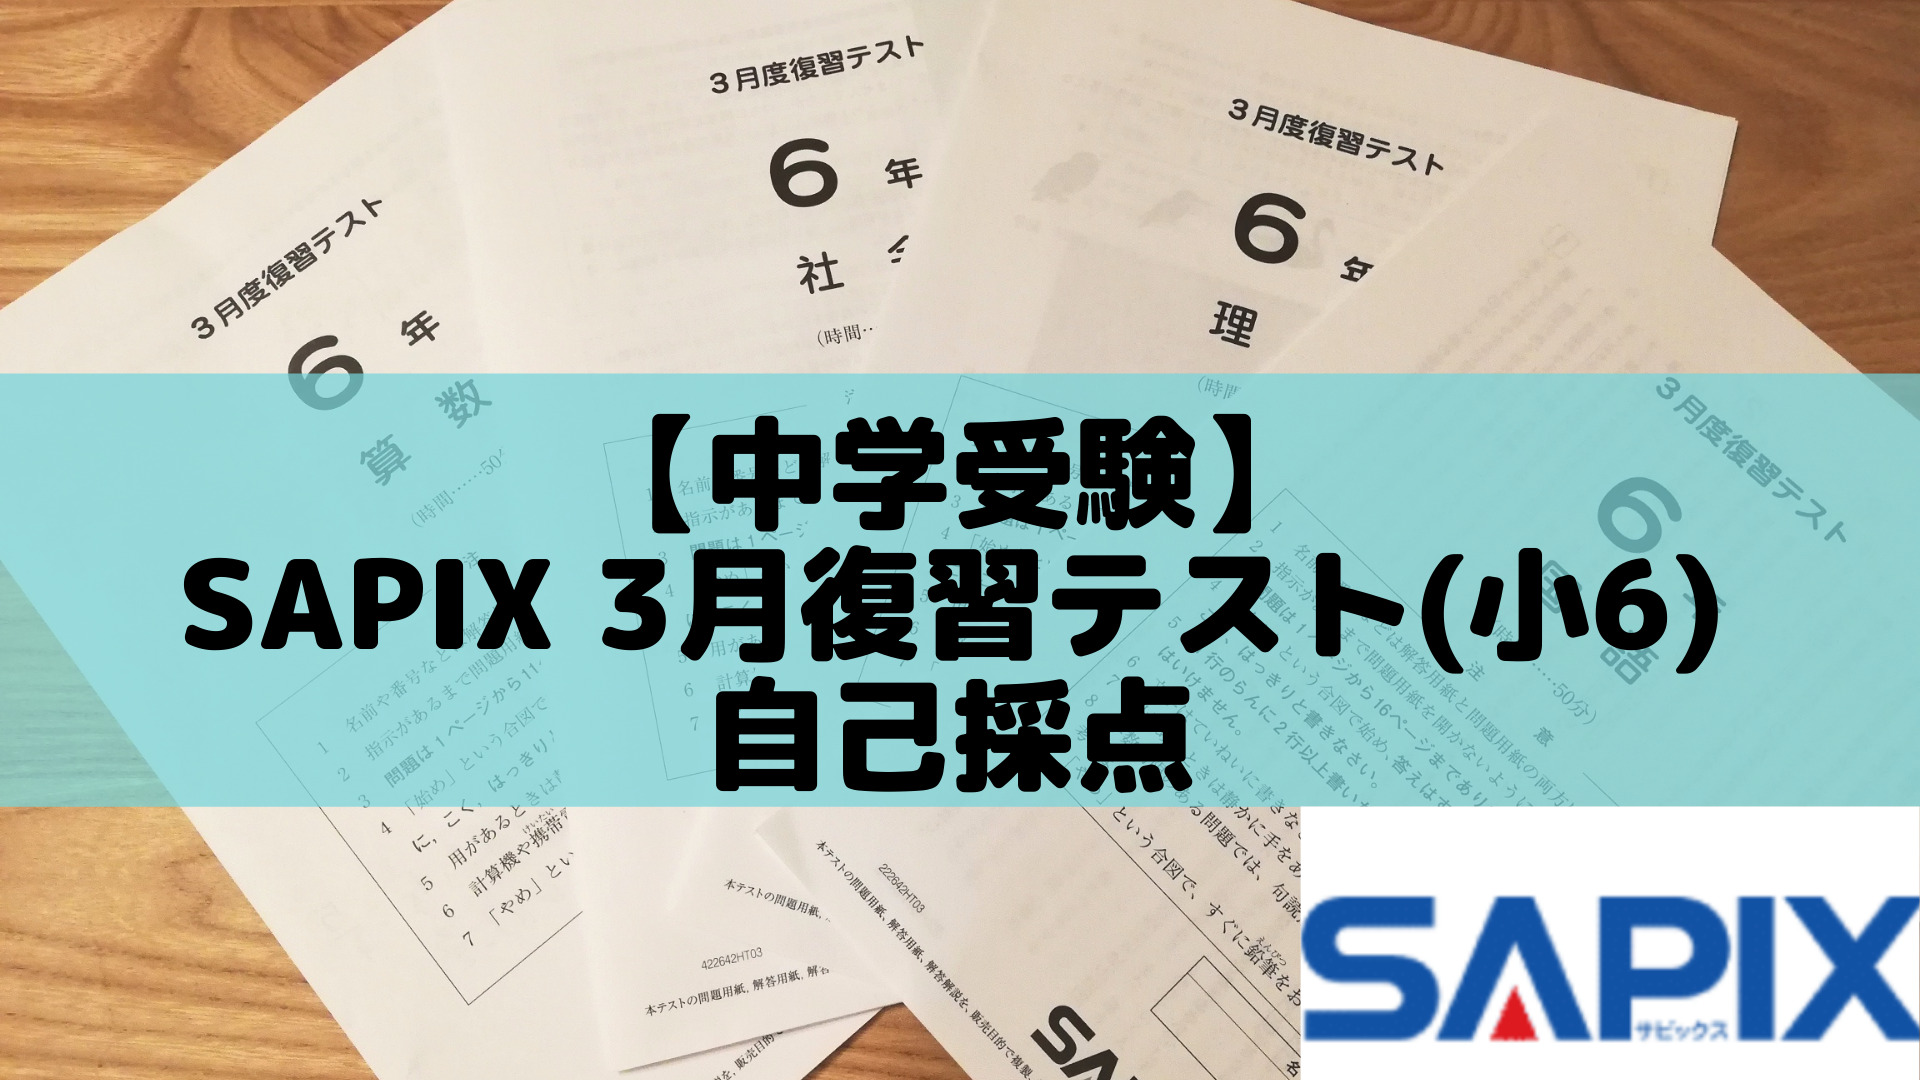 中学受験】SAPIX 3月復習テスト(小6)自己採点 | ポチたま中学受験